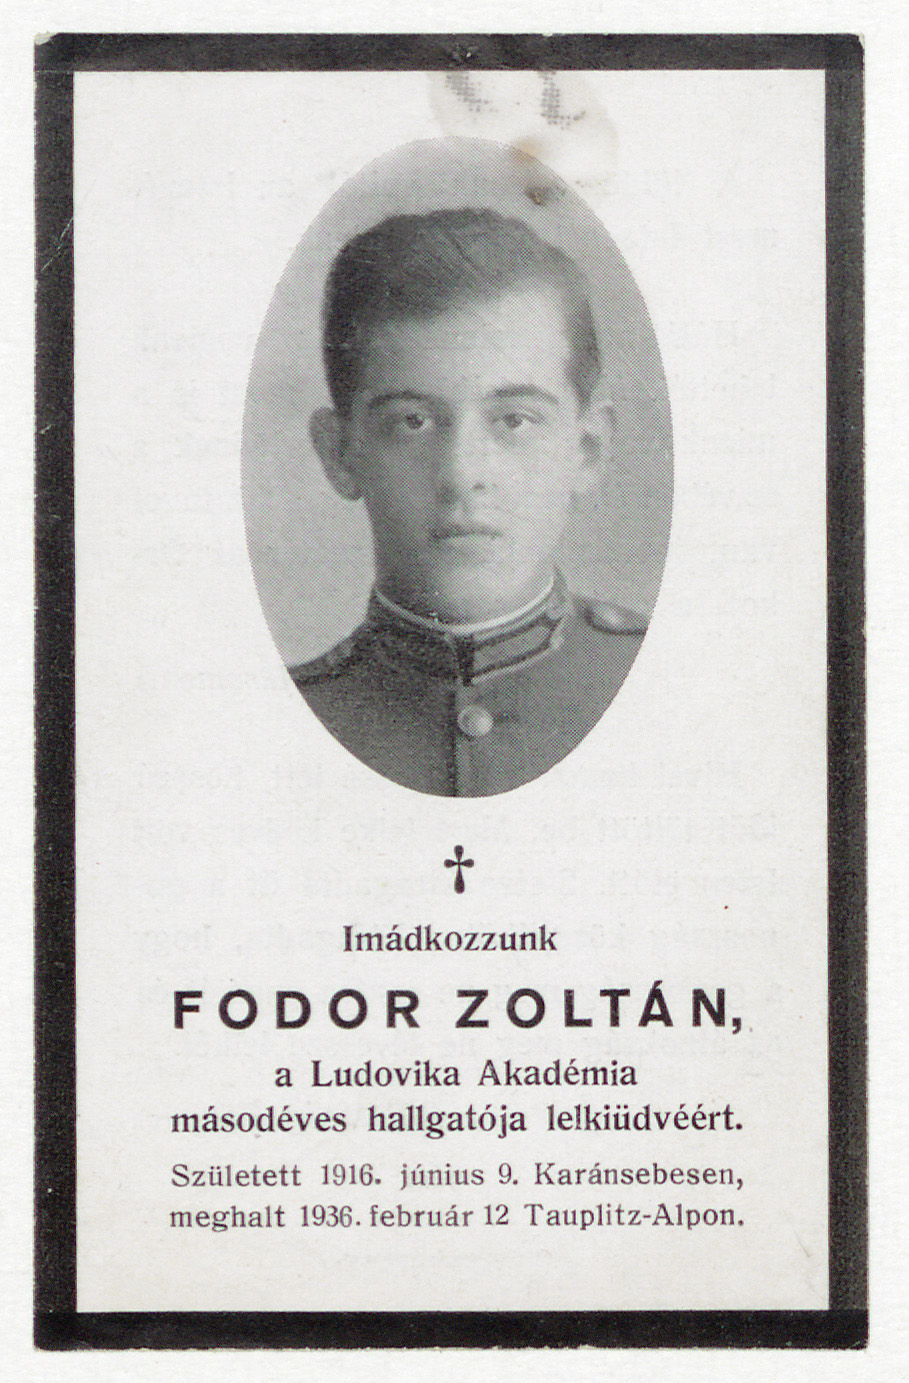 Imádkozzunk Fodor Zoltán, a Ludovika Akadémia másodéves hallgatója lelkiüdvéért.